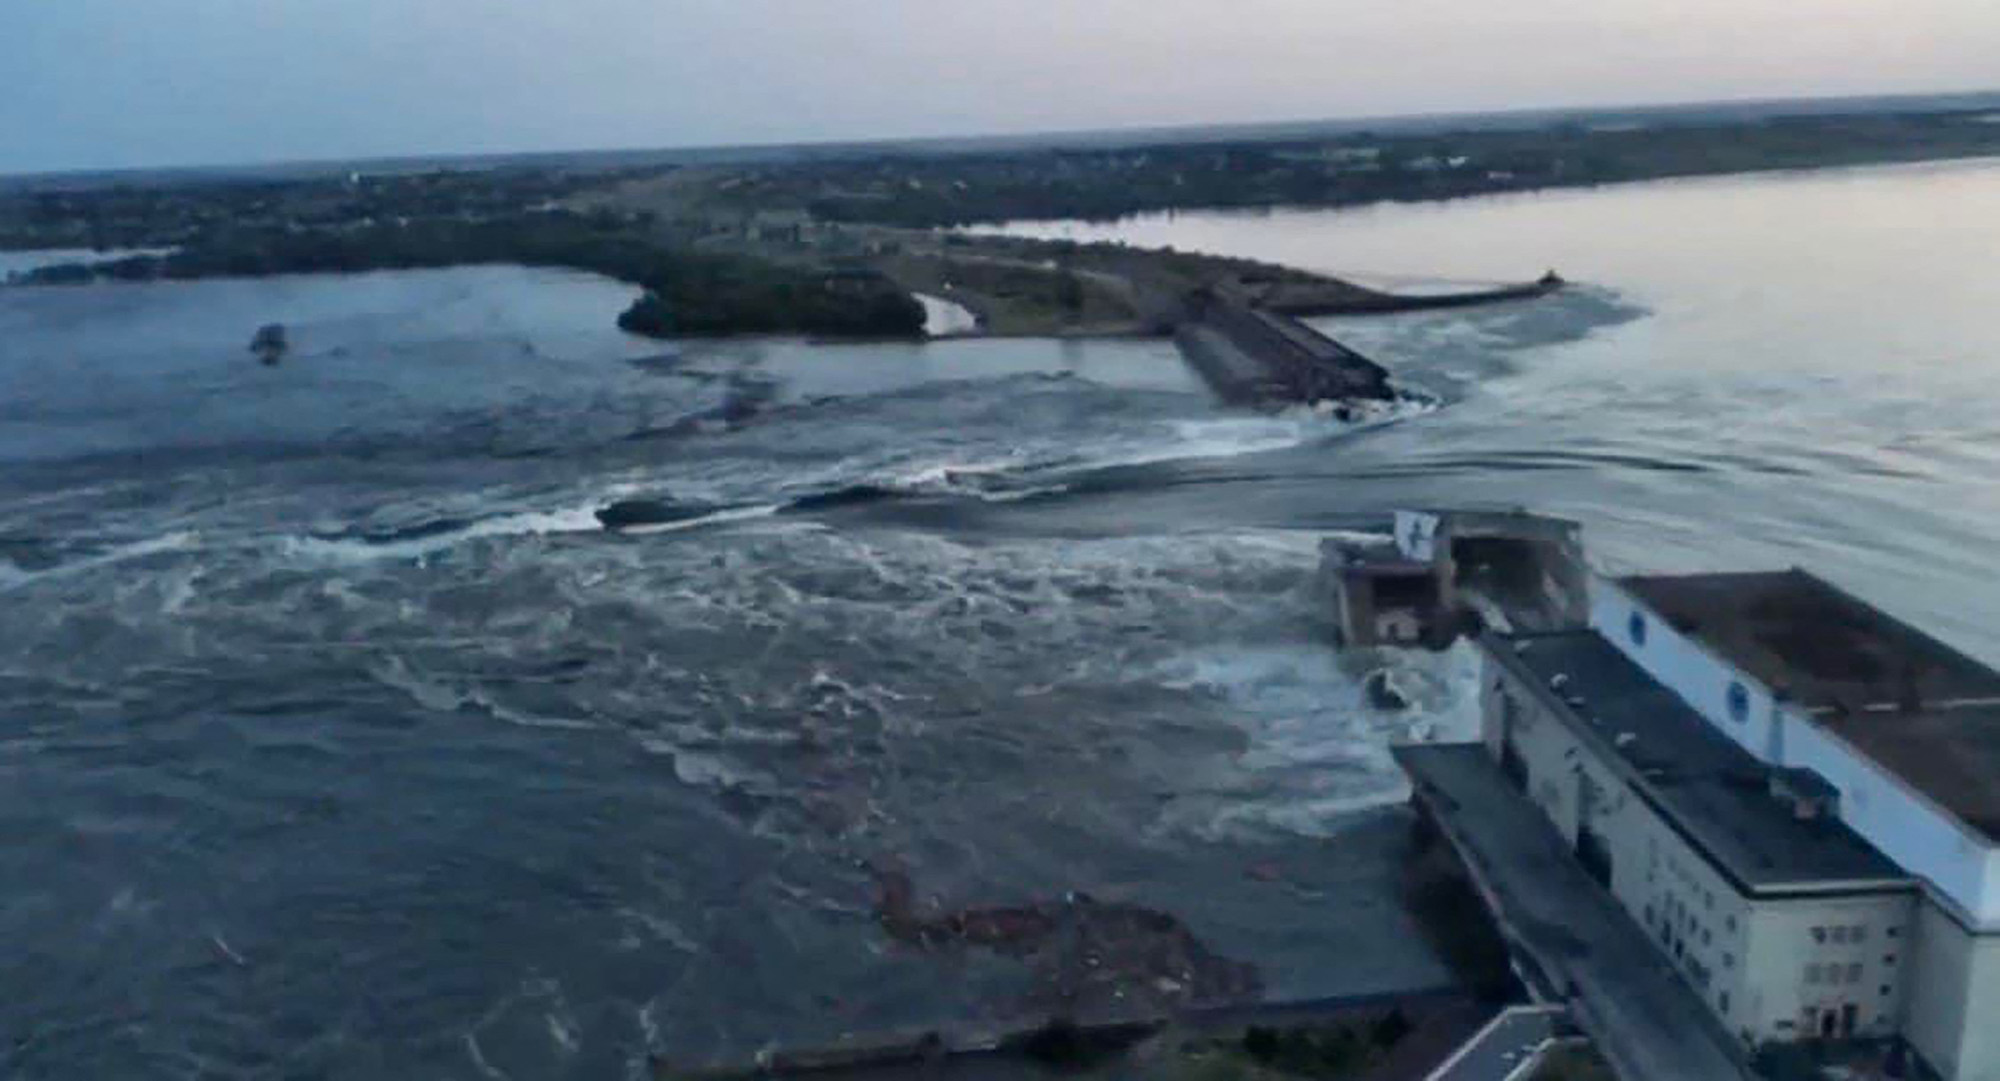 Staudamm Nowa Kachowka im Süden der Ukraine nach Explosion schwer beschädigt (Bild: AFP)